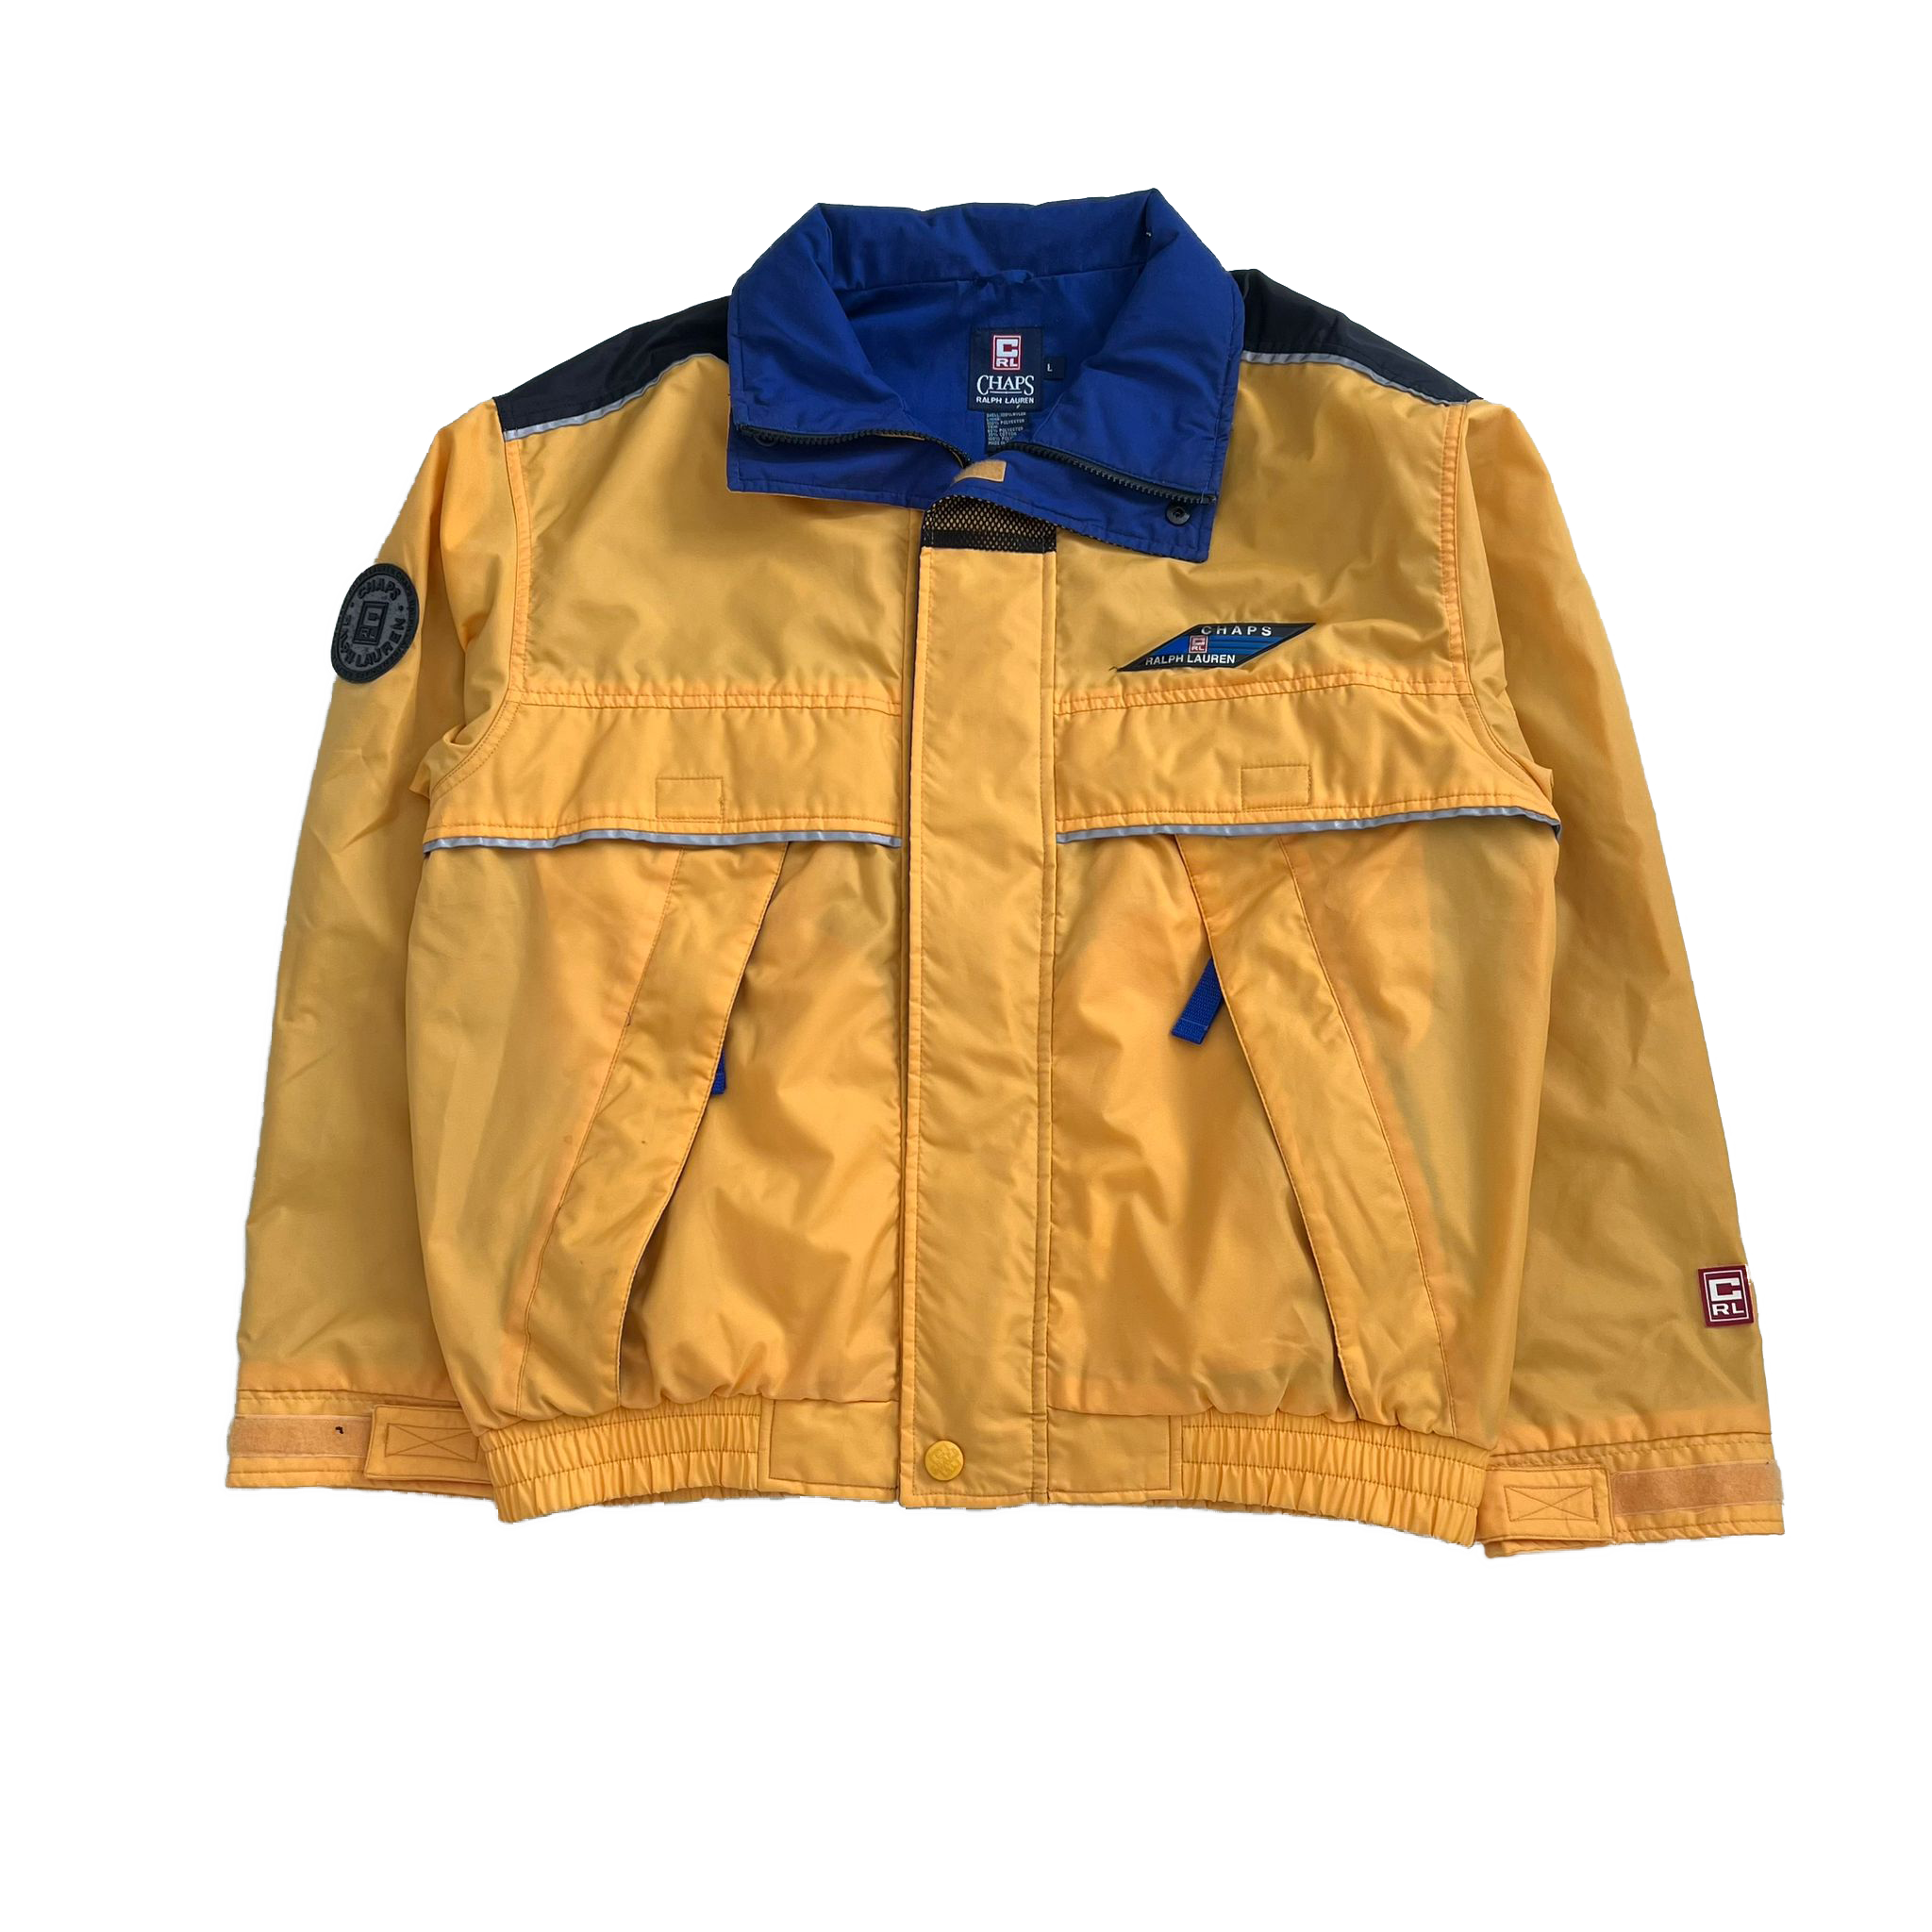 90's Ralph Lauren Chaps jacket